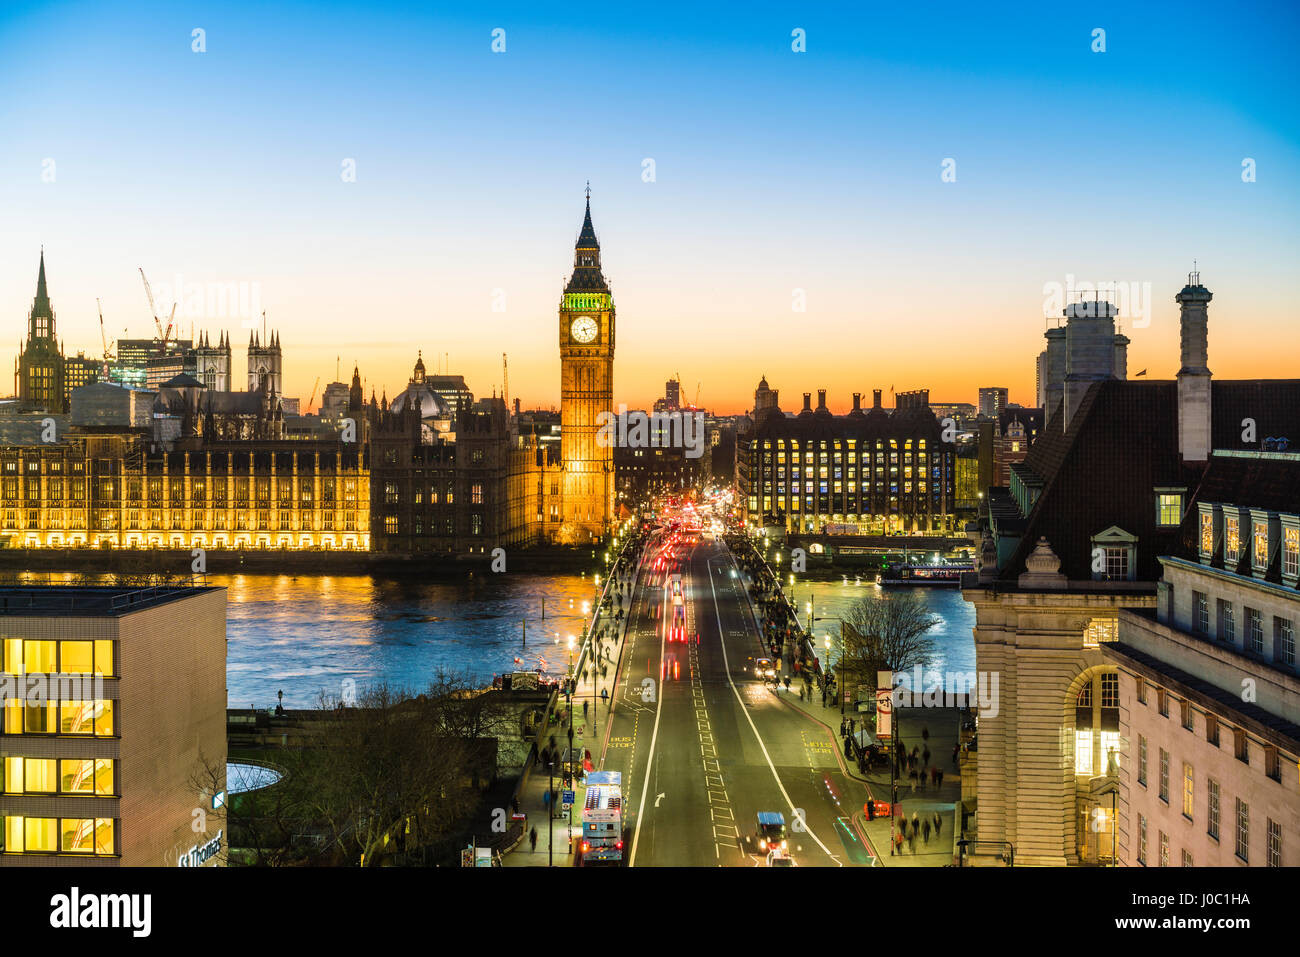 Un alto ángulo de visualización del Big Ben, el Palacio de Westminster y el puente de Westminster al anochecer, Londres, Inglaterra, Reino Unido. Foto de stock